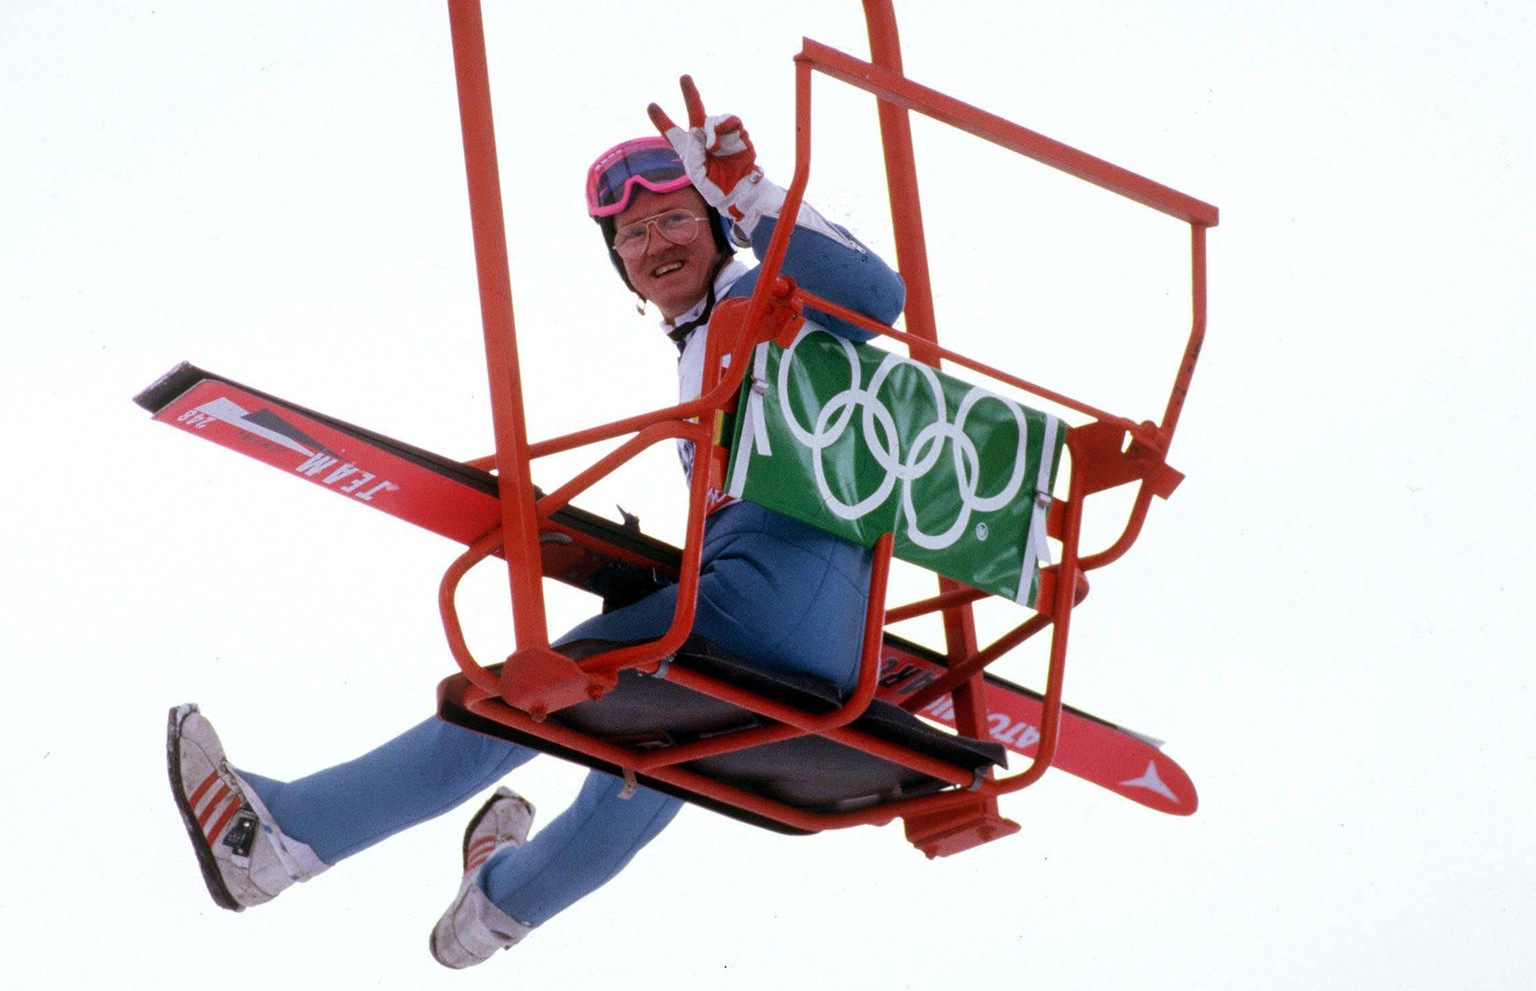 IMAGO / Sven Simon

Michael Edwards (Großbritannien) alias Eddie the Eagle grüßt mit dem Peace-Zeichen aus einem Sessellift / Der erste Brite, bei einem olympischen Skispringen war mehr Publikumsliebl ...